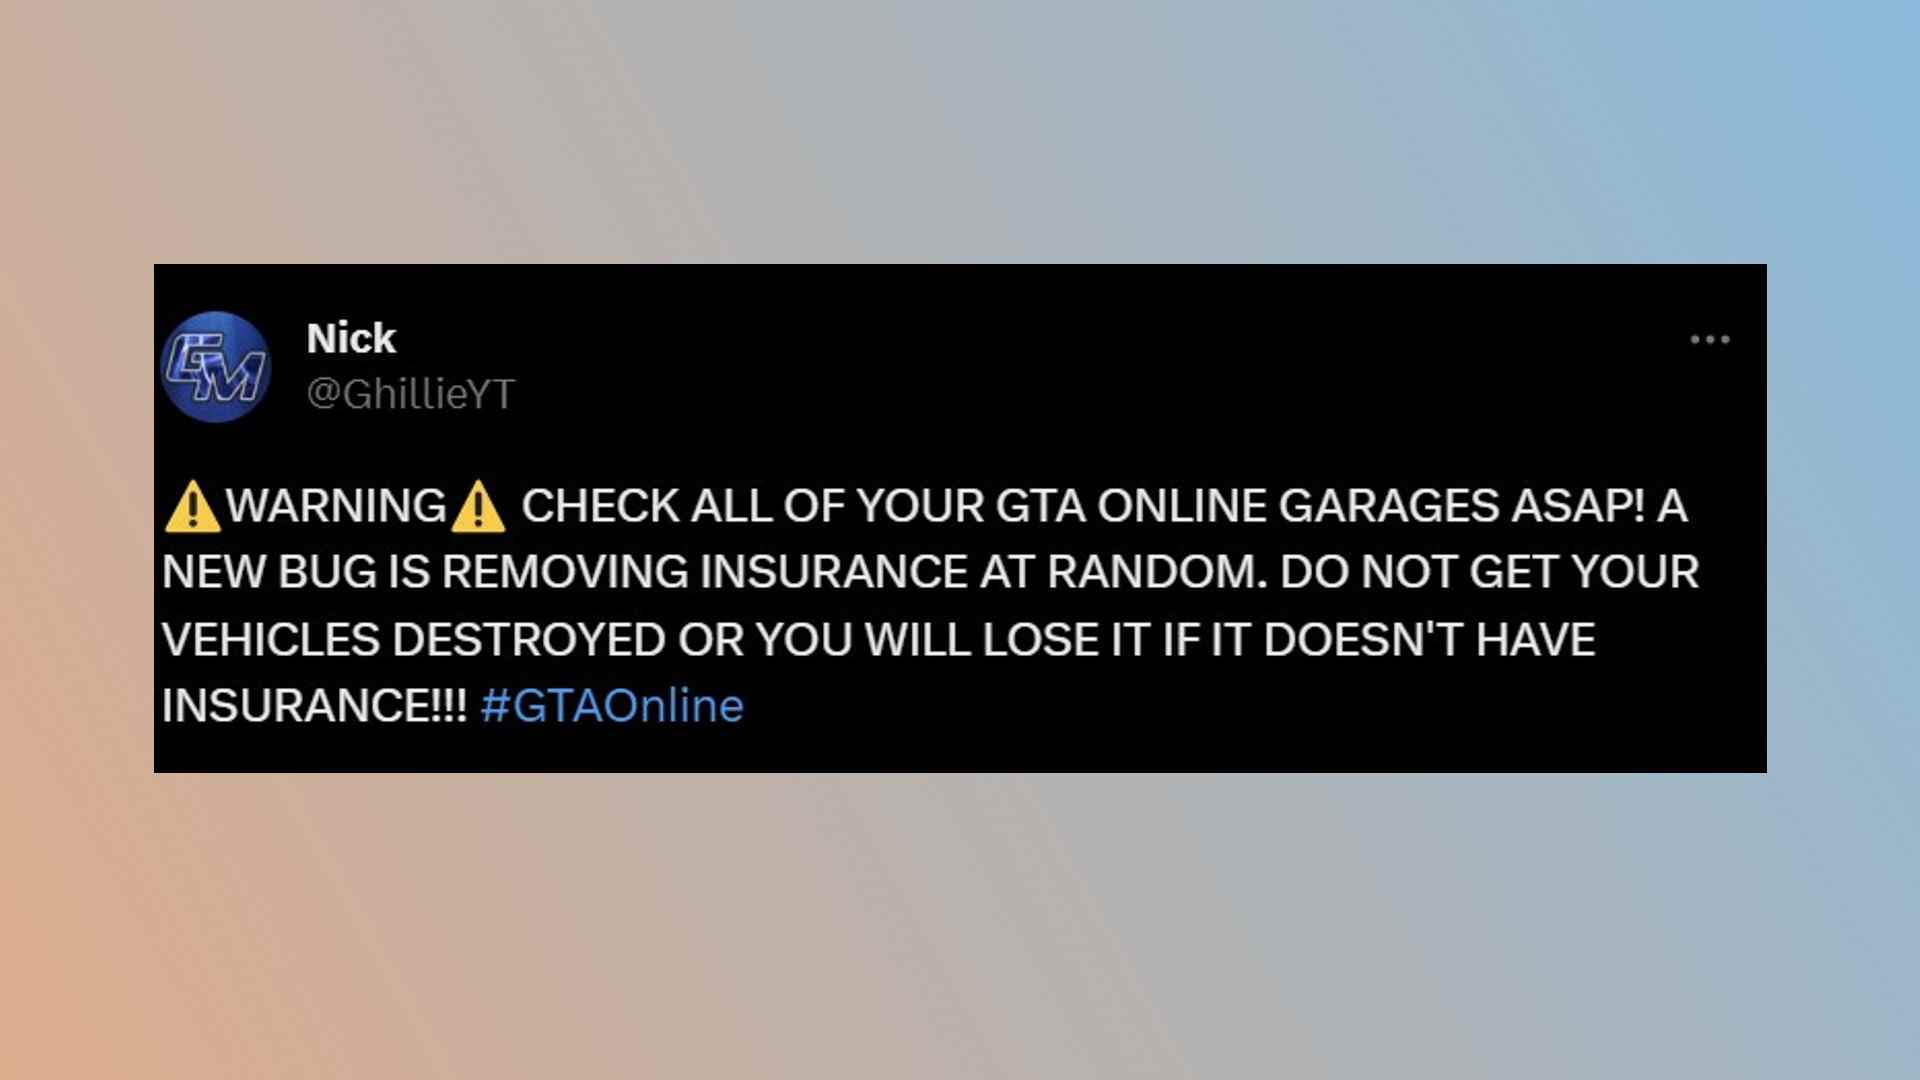 GTA 5 araç hatası: Rockstar sandbox oyunu GTA 5'teki araçlar için sigorta hatasını açıklayan bir tweet